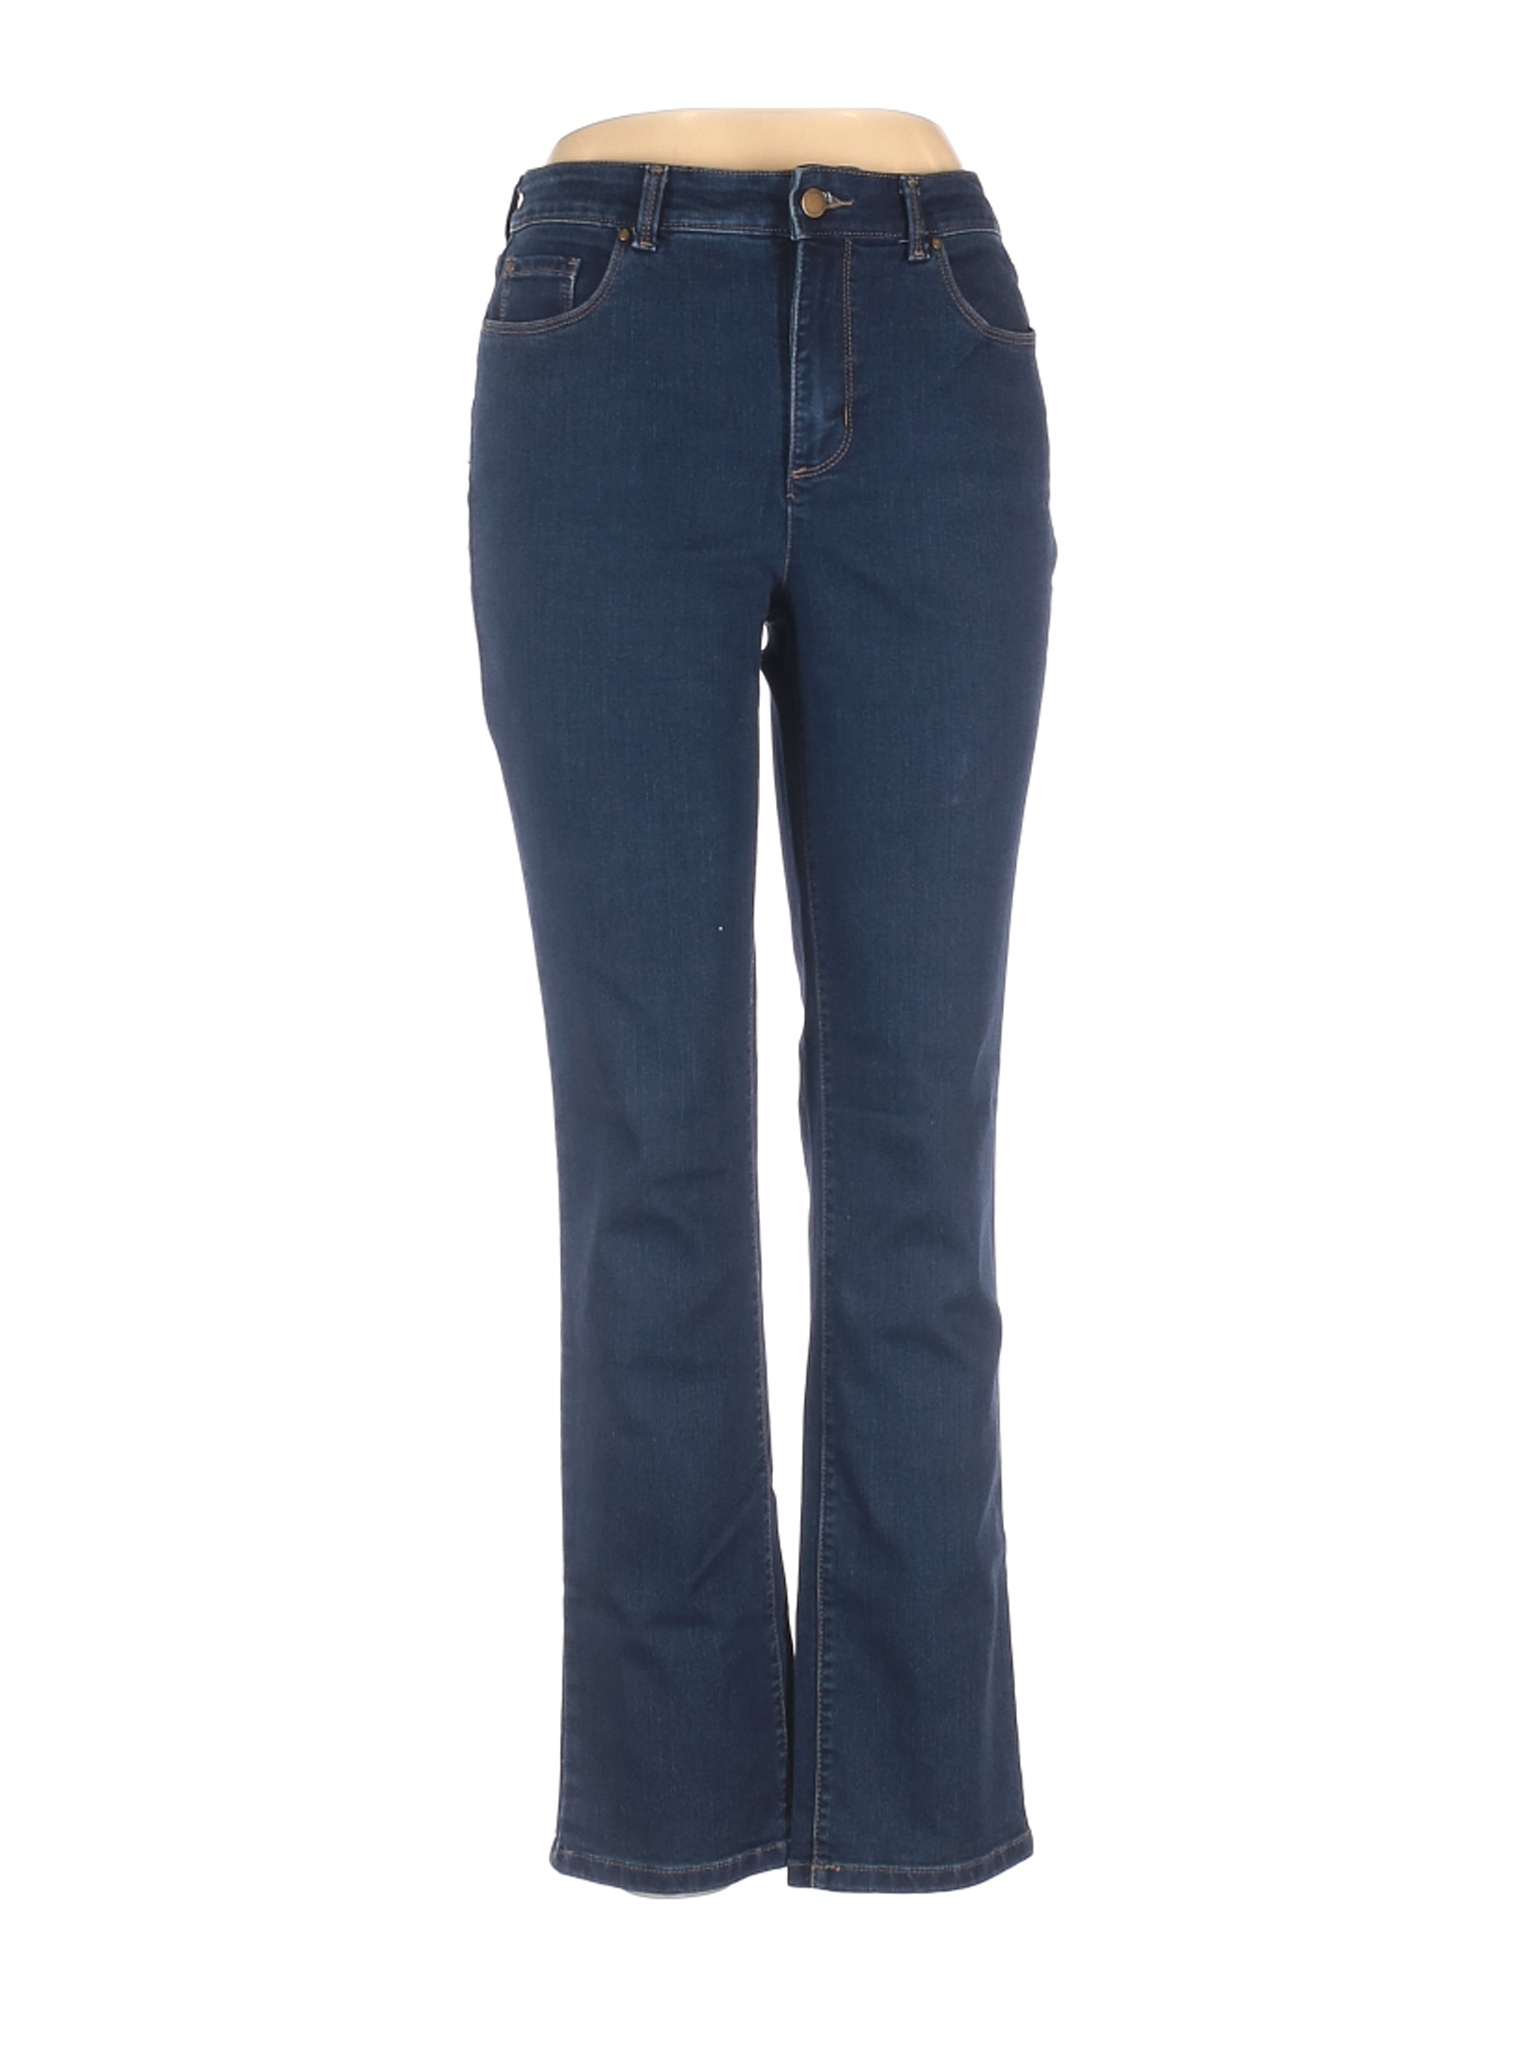 Charter Club Women Blue Jeans 10 | eBay